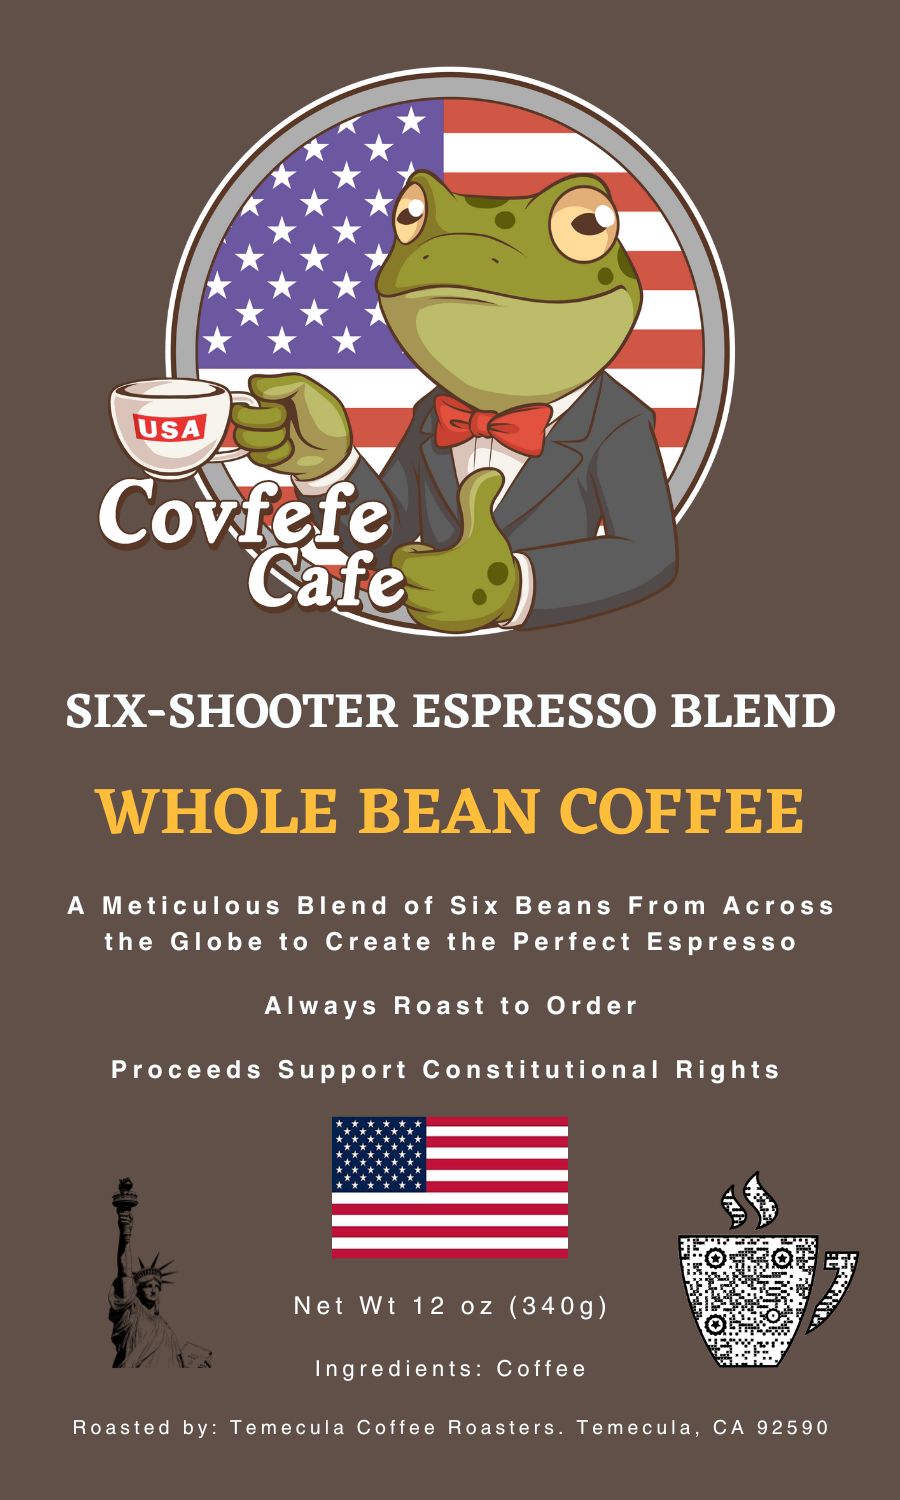 Six-Shooter Espresso Blend (6-Bean Mix)